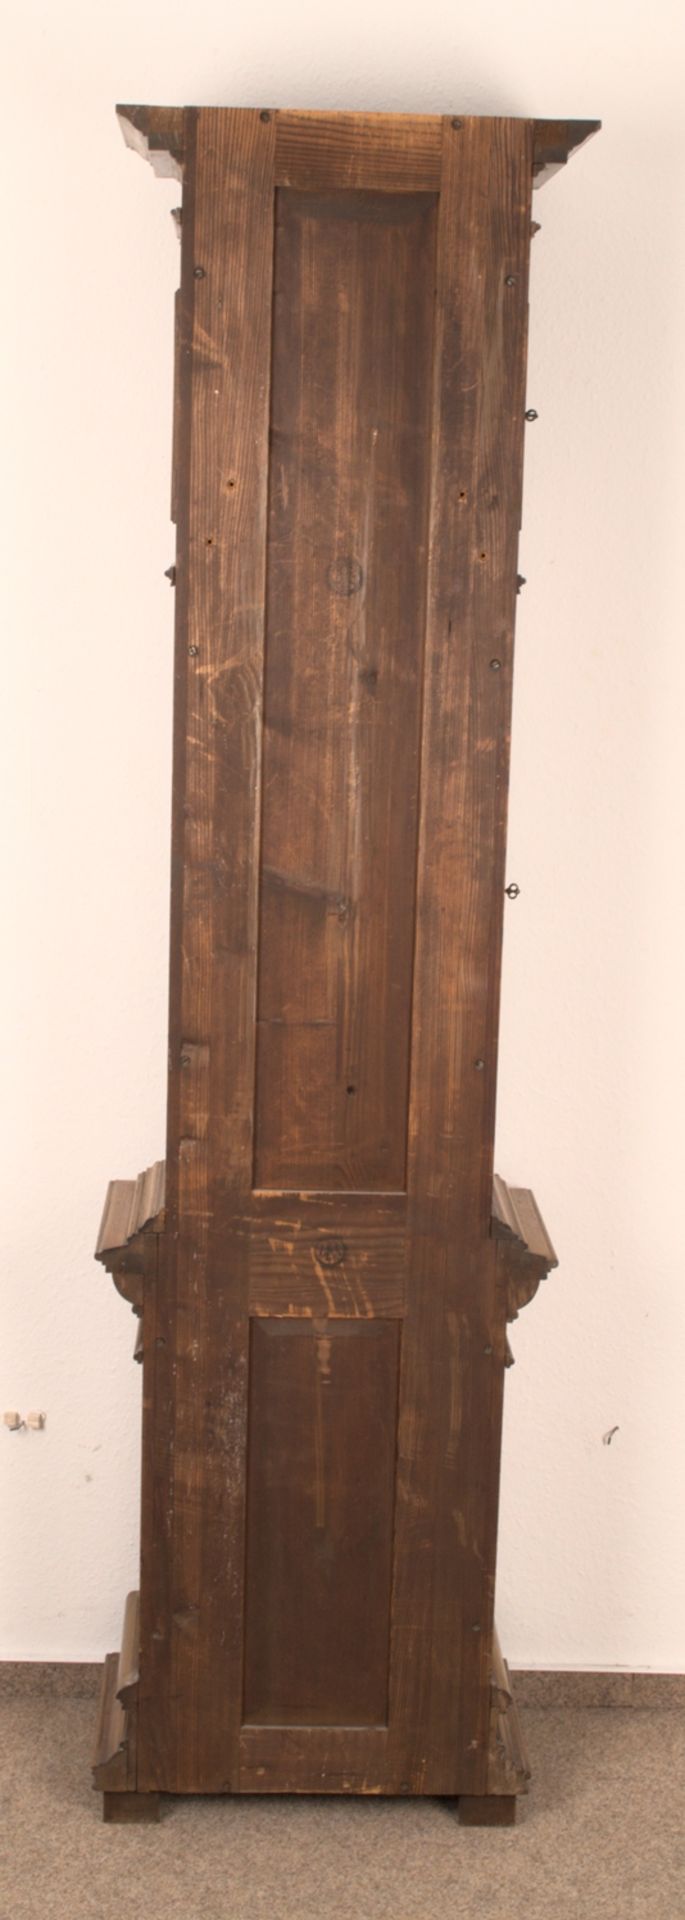 Antike Bodenstanduhr, Historismus um 1880/90, zweigewichtiges, ungeprüftes, mechanisches Uhrwerk der - Bild 25 aus 27